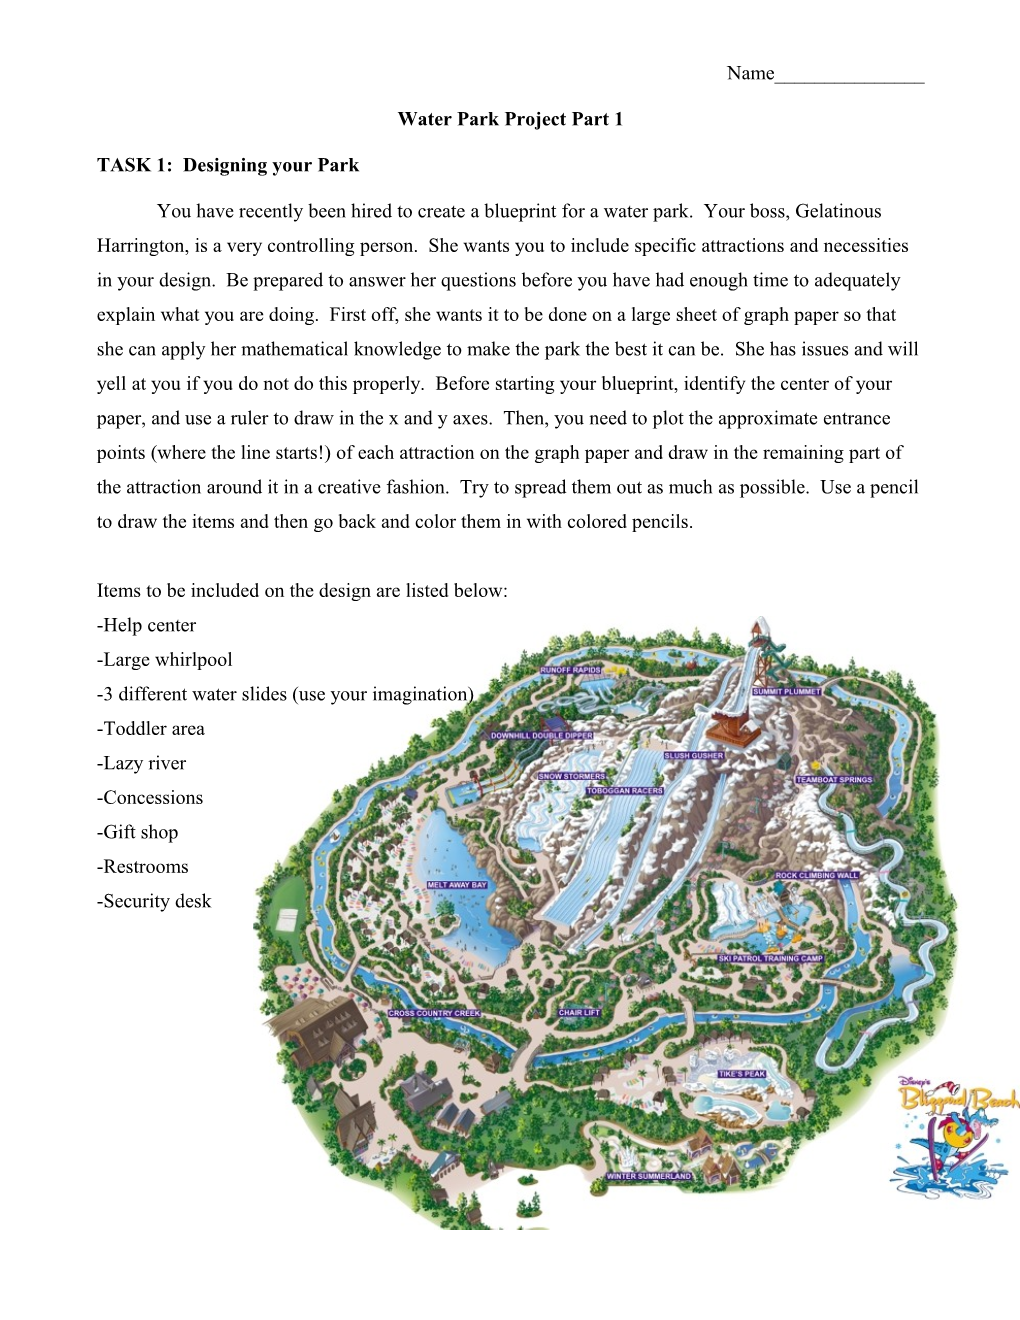 TASK 1: Designing Your Park